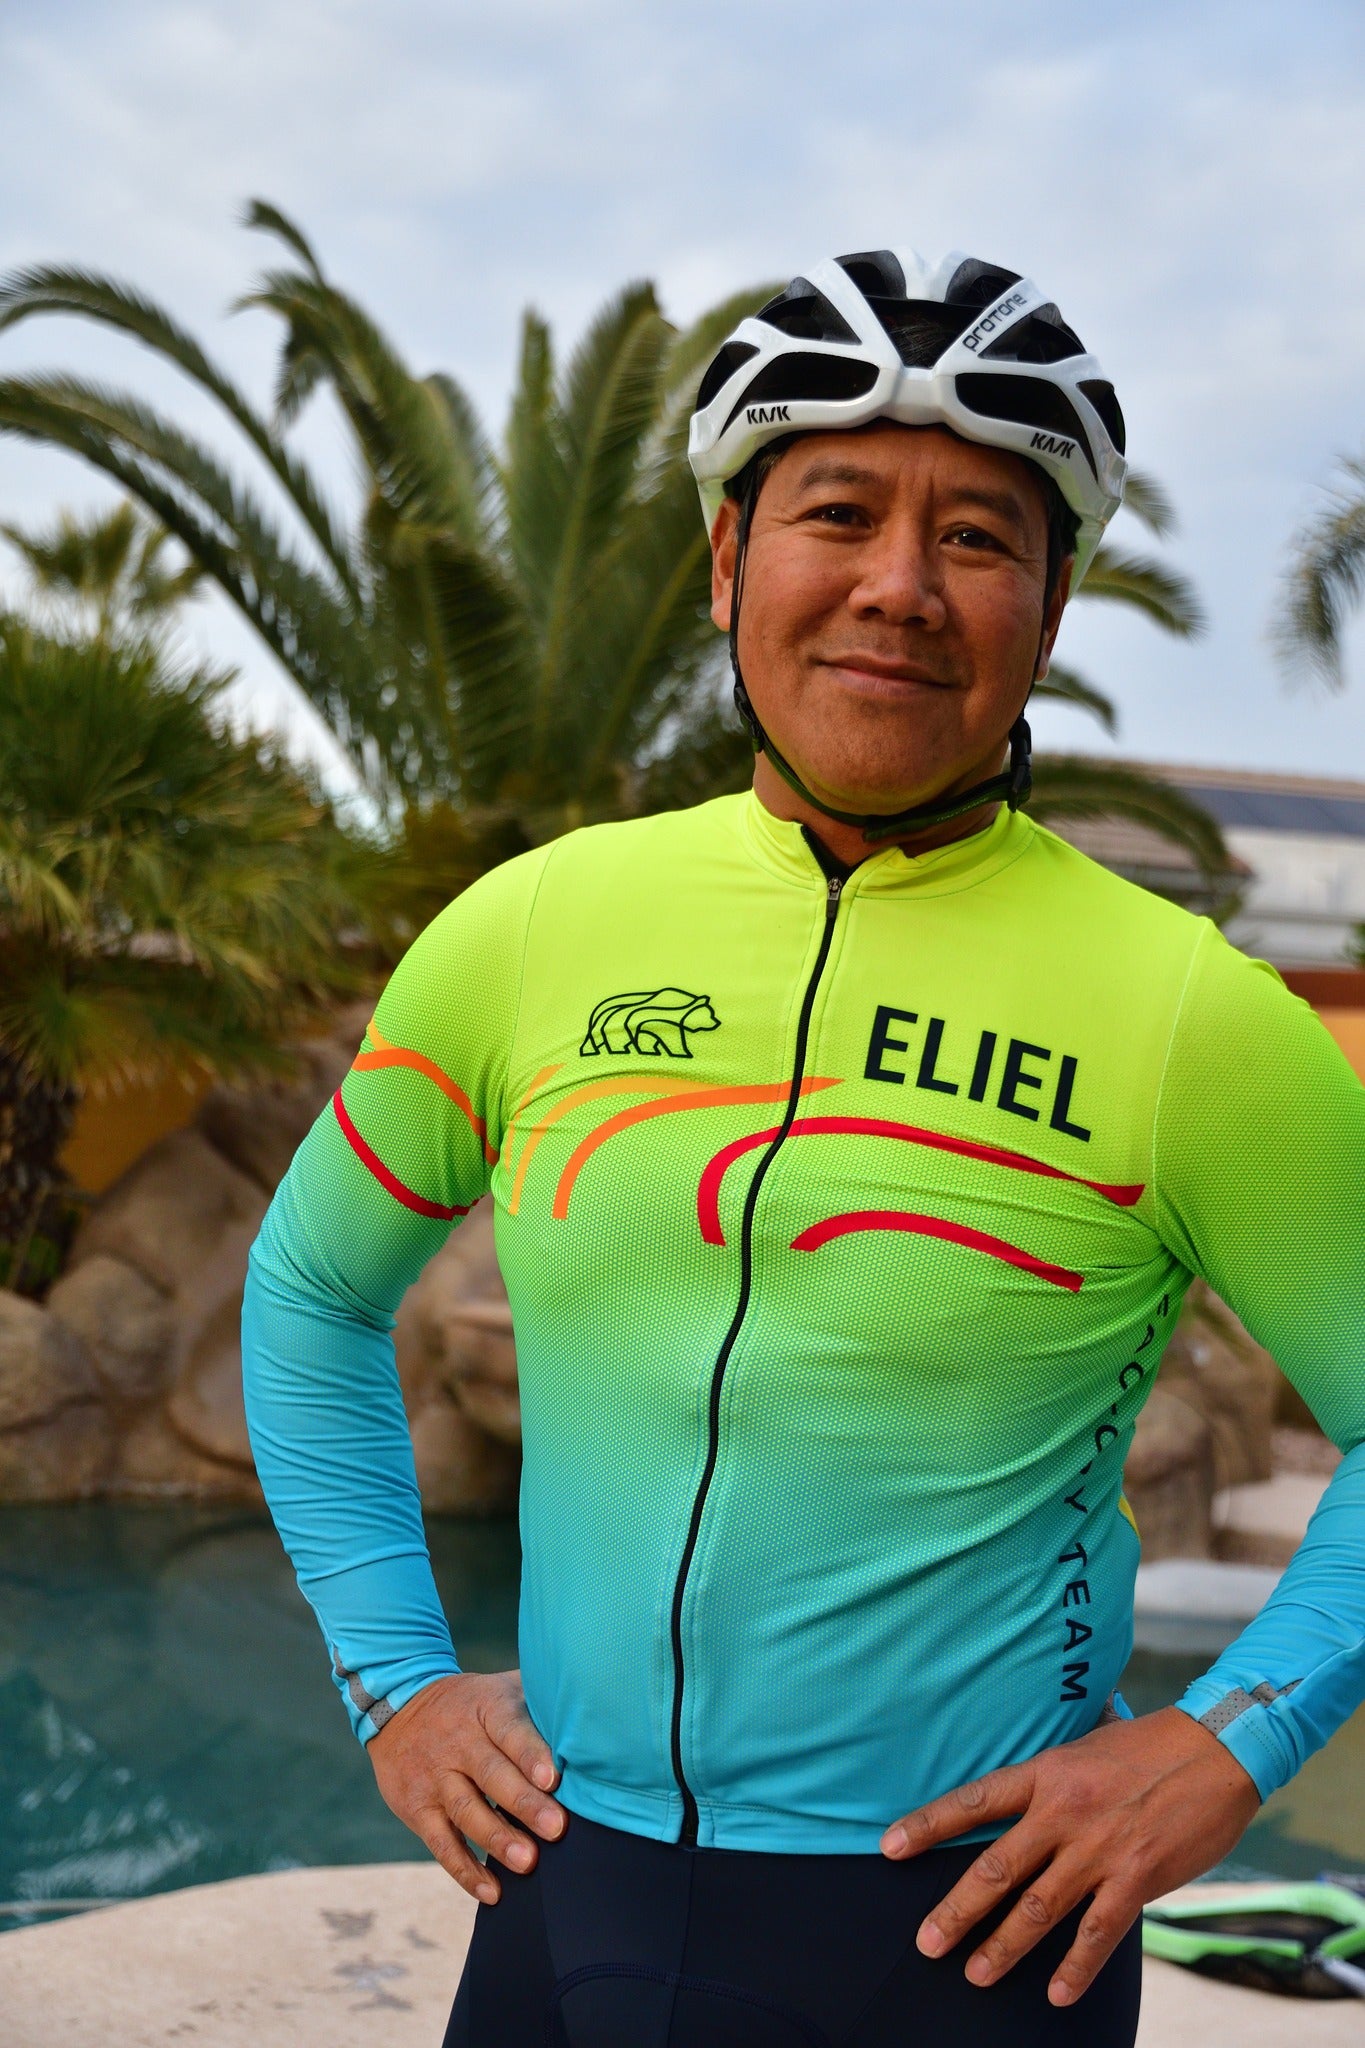 El Niño – Eliel Cycling